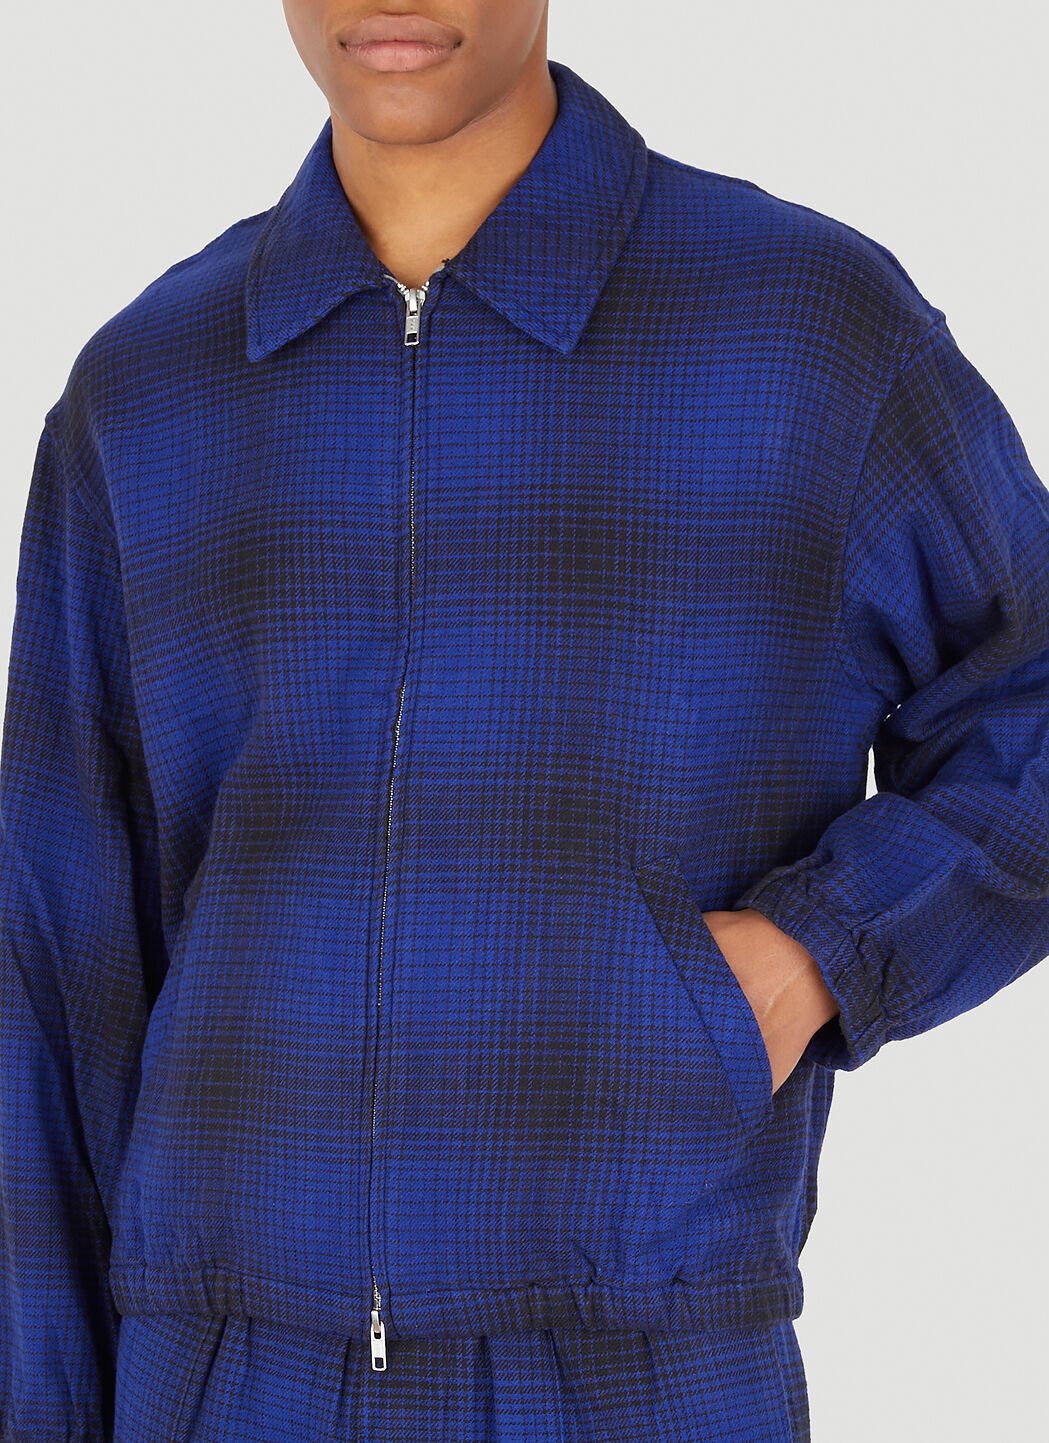 NOMA t.d. Ombre Plaid Blouson Jacket in Blue | LN-CC®